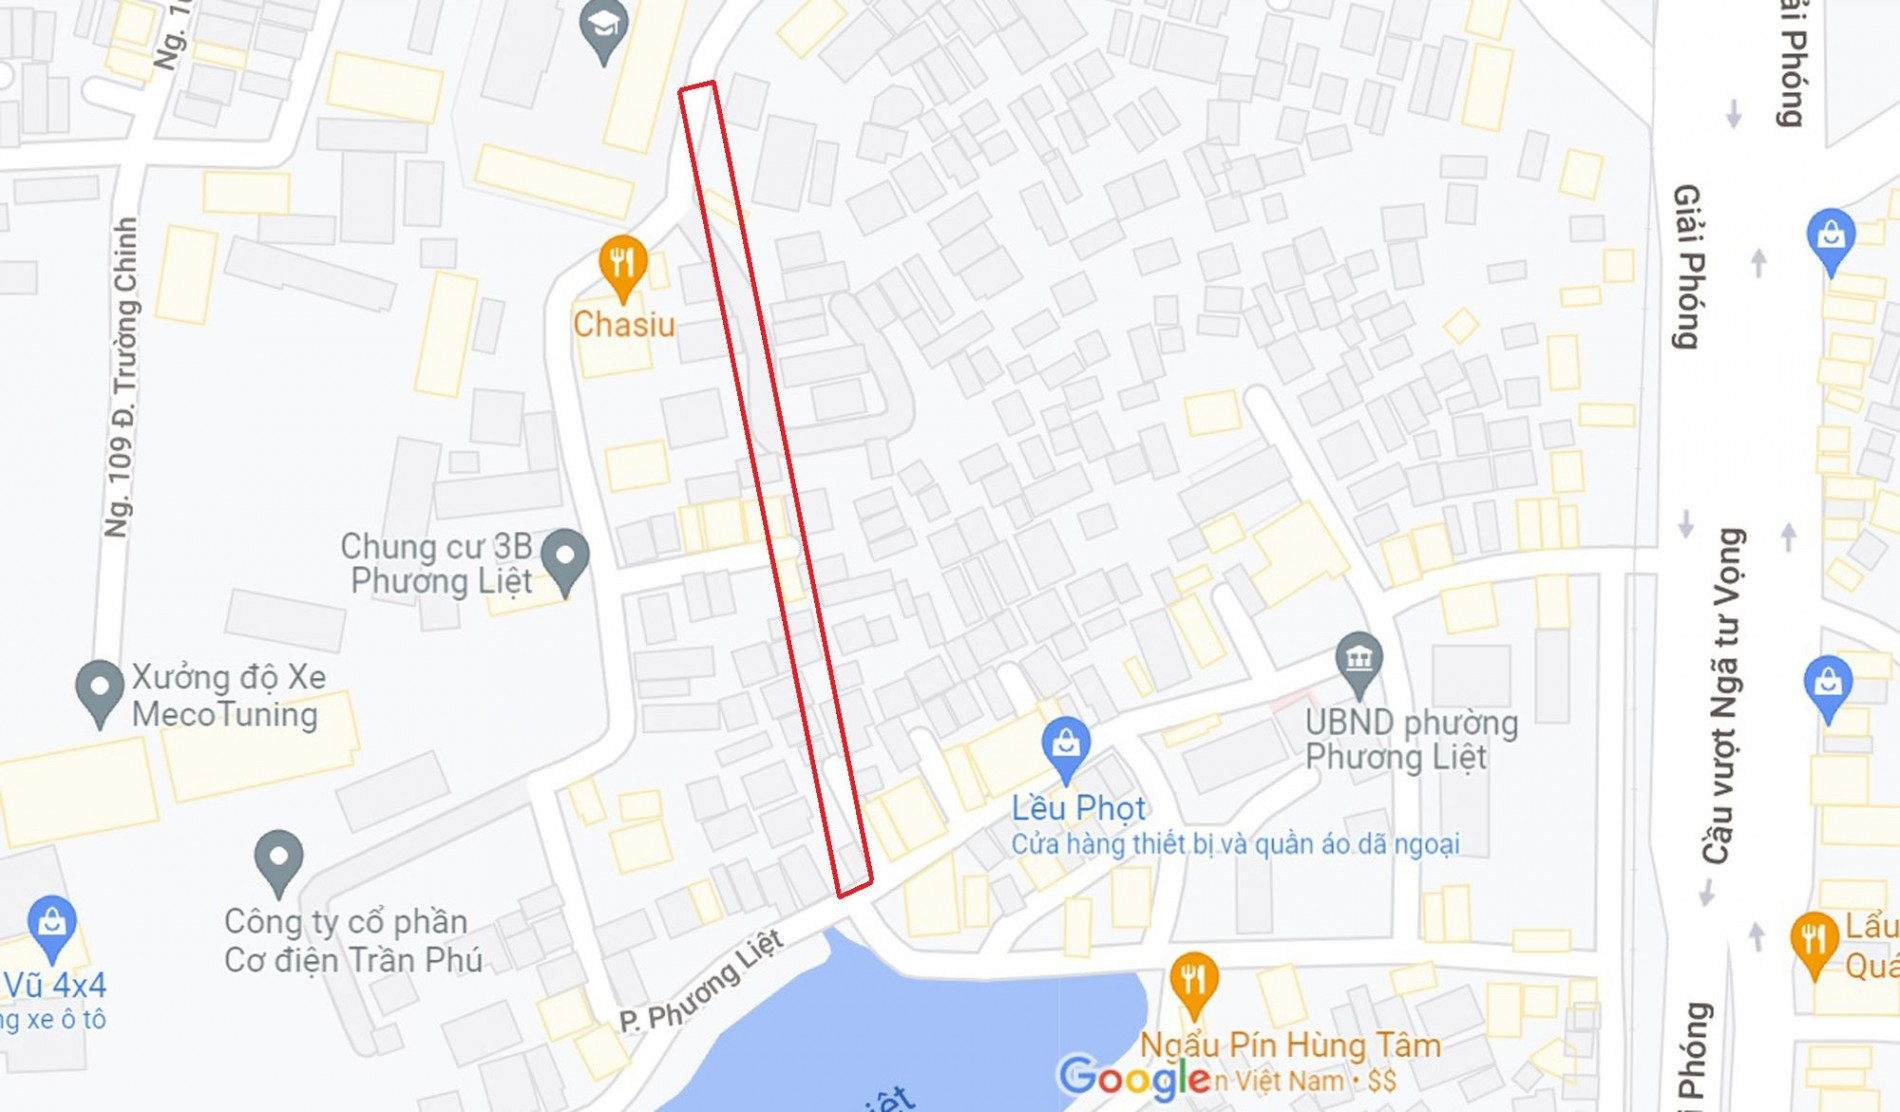 Đường sẽ mở theo quy hoạch ở phường Phương Liệt, Thanh Xuân, Hà Nội (phần 1)